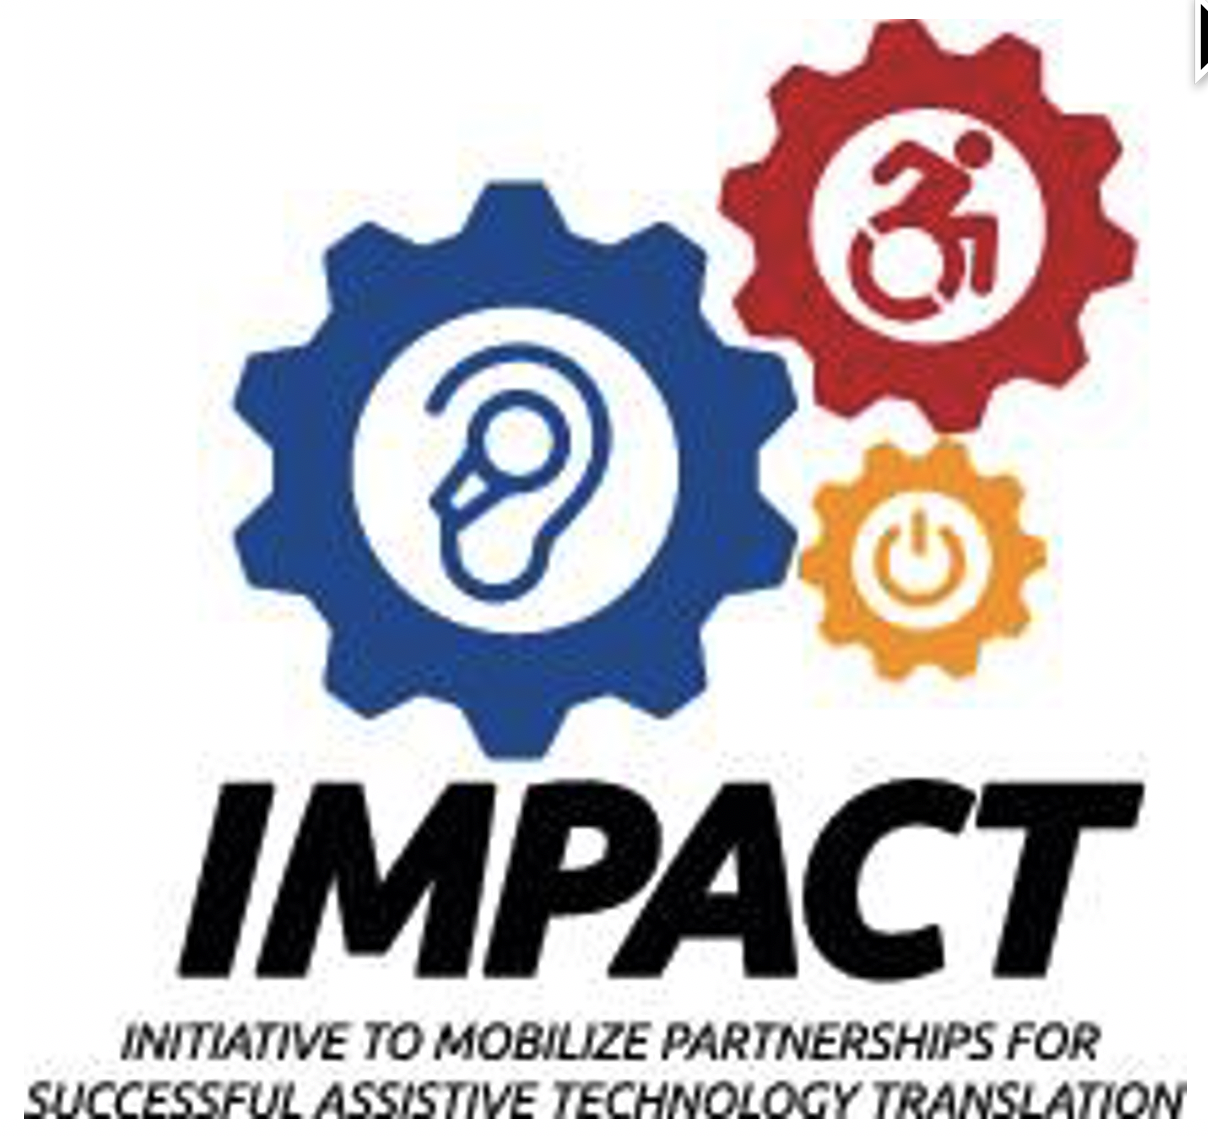 Impact Logo